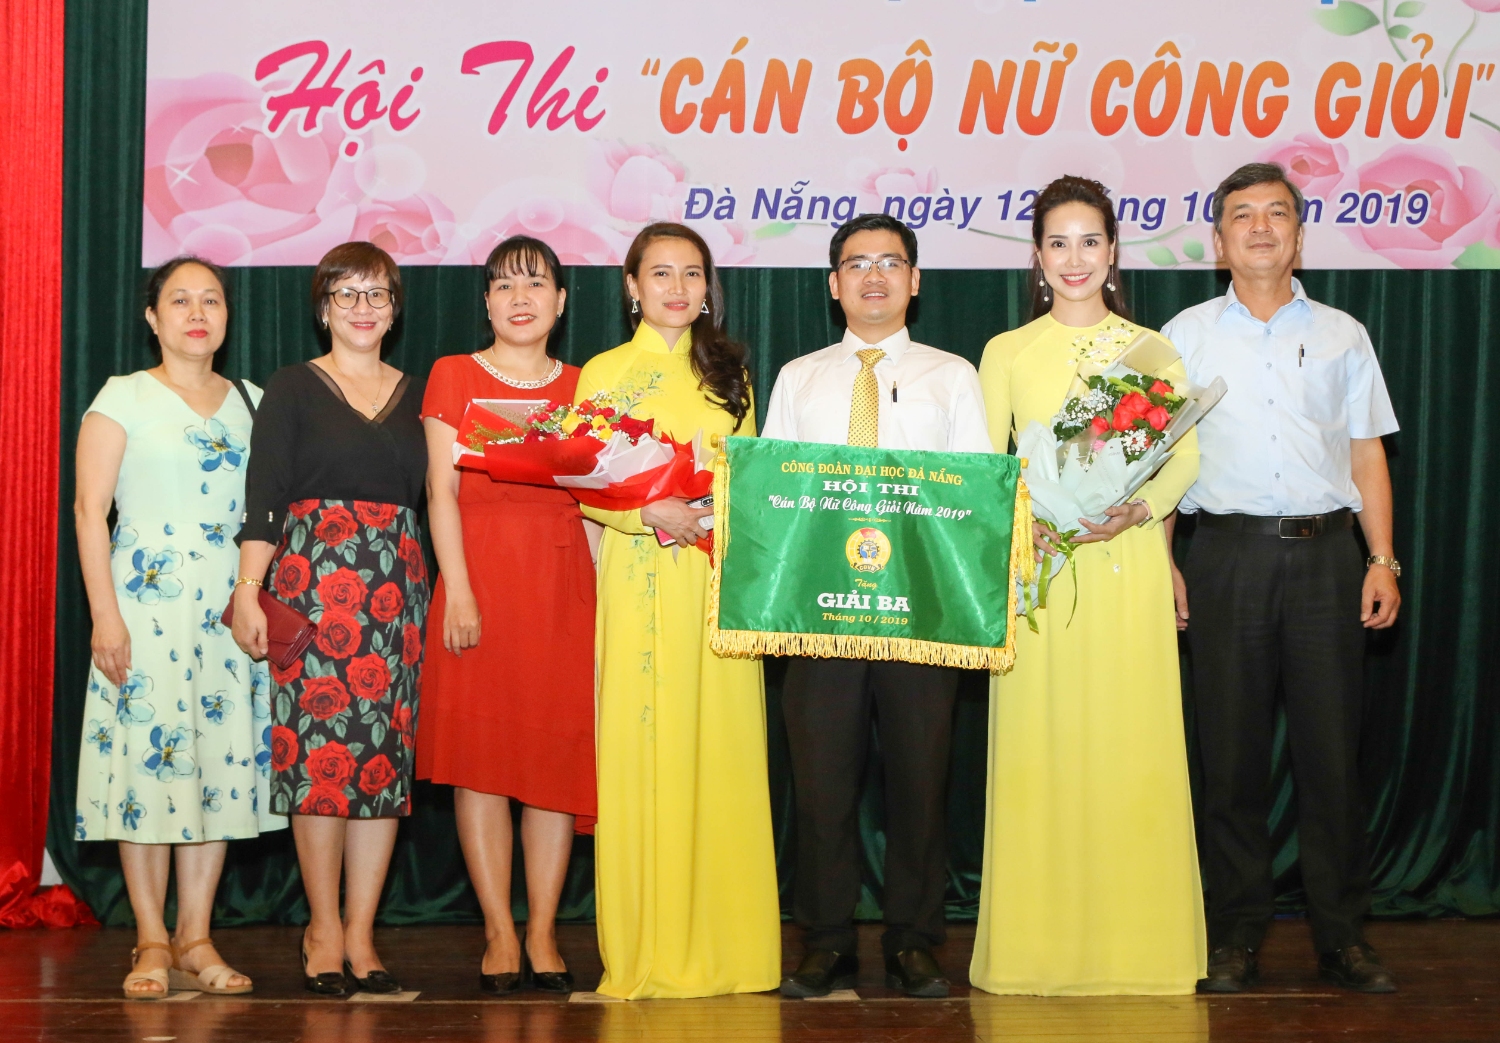 Trường Đại học Sư phạm: Tham gia Lễ kỷ niệm 89 năm ngày thành lập Hội liên hiệp Phụ nữ Việt Nam và Hội thi “Cán bộ nữ công giỏi” năm 2019